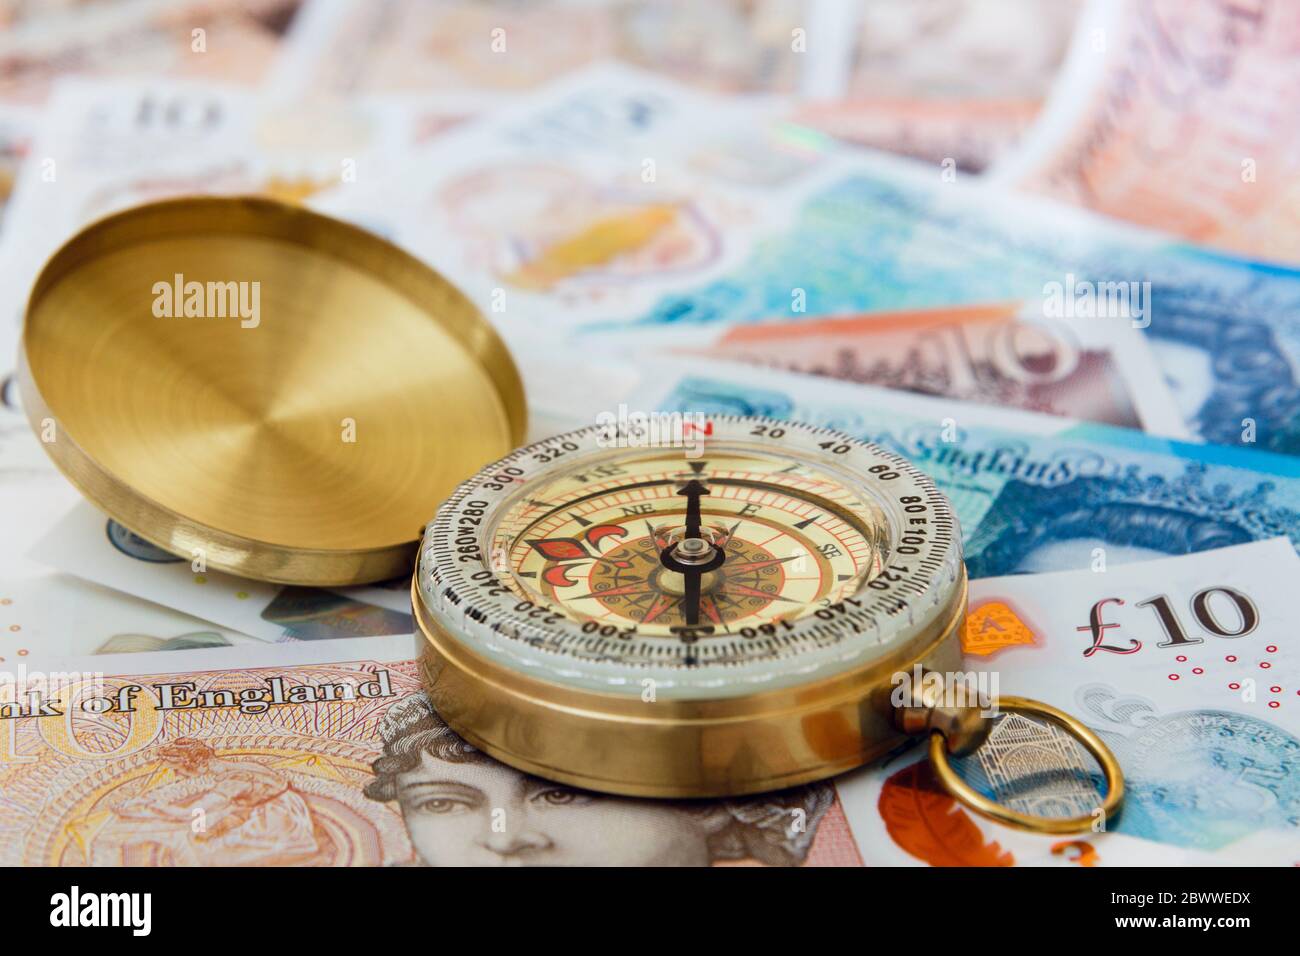 Un compas sur Sterling Money £ dix et cinq livres sterling livres sterling livres sterling pour illustrer l'avenir de l'économie britannique. Changer de direction concept Angleterre Royaume-Uni Grande-Bretagne Banque D'Images